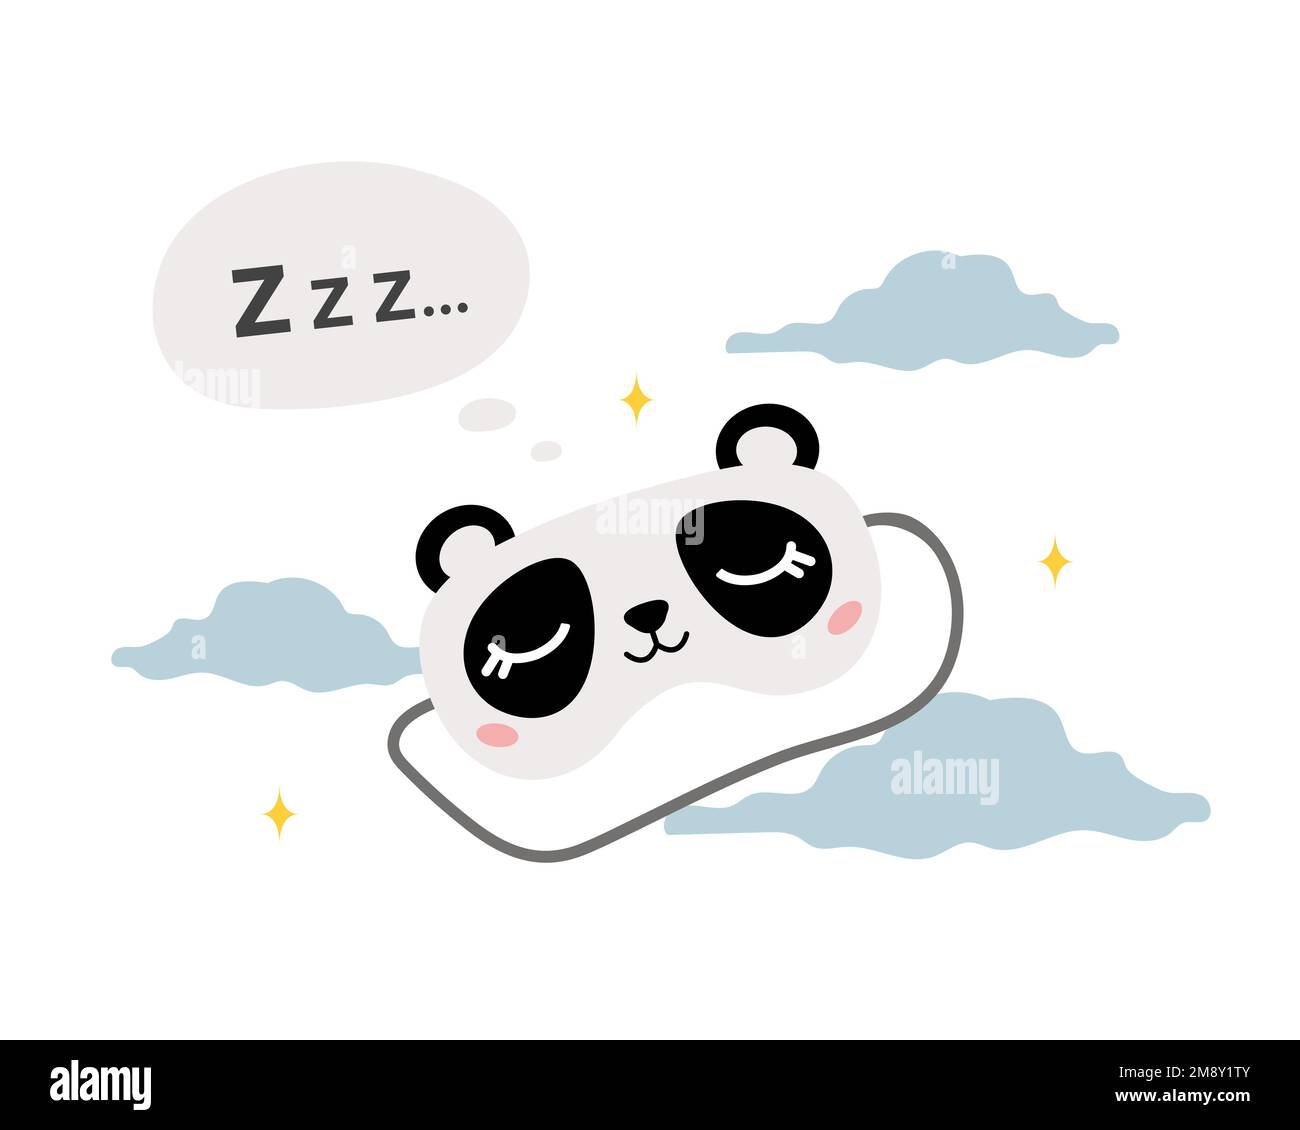 Schlafmaske mit süßem Panda. Augenschutzzubehör mit Tier. Nachtwäsche zum Schlafen, Träumen und Entspannen. Komisches Pyjama-Element. Vektor Stock Vektor